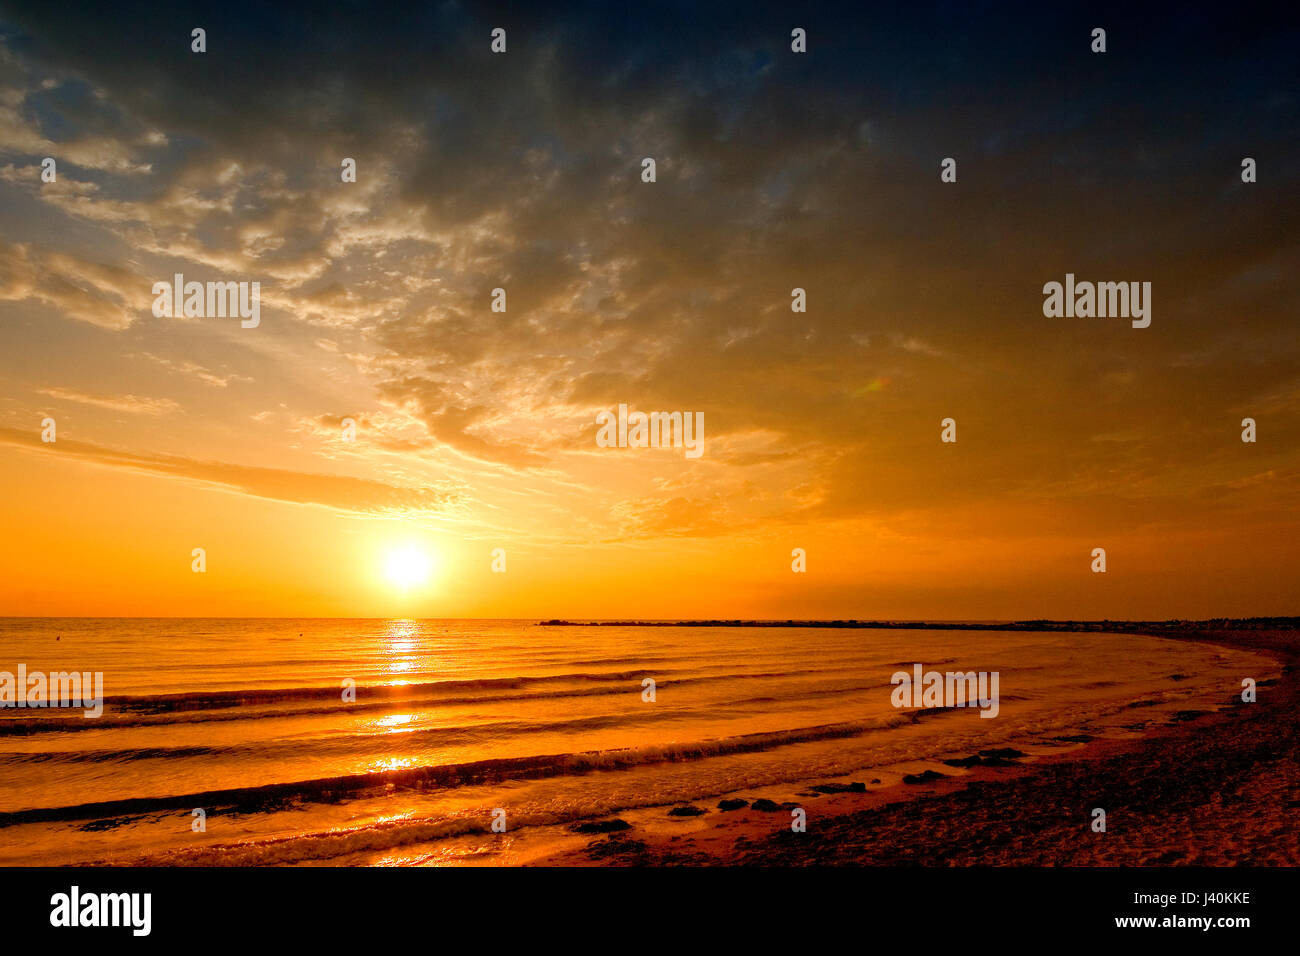 Sol paisaje marino con golden mar y nubes en el cielo Foto de stock